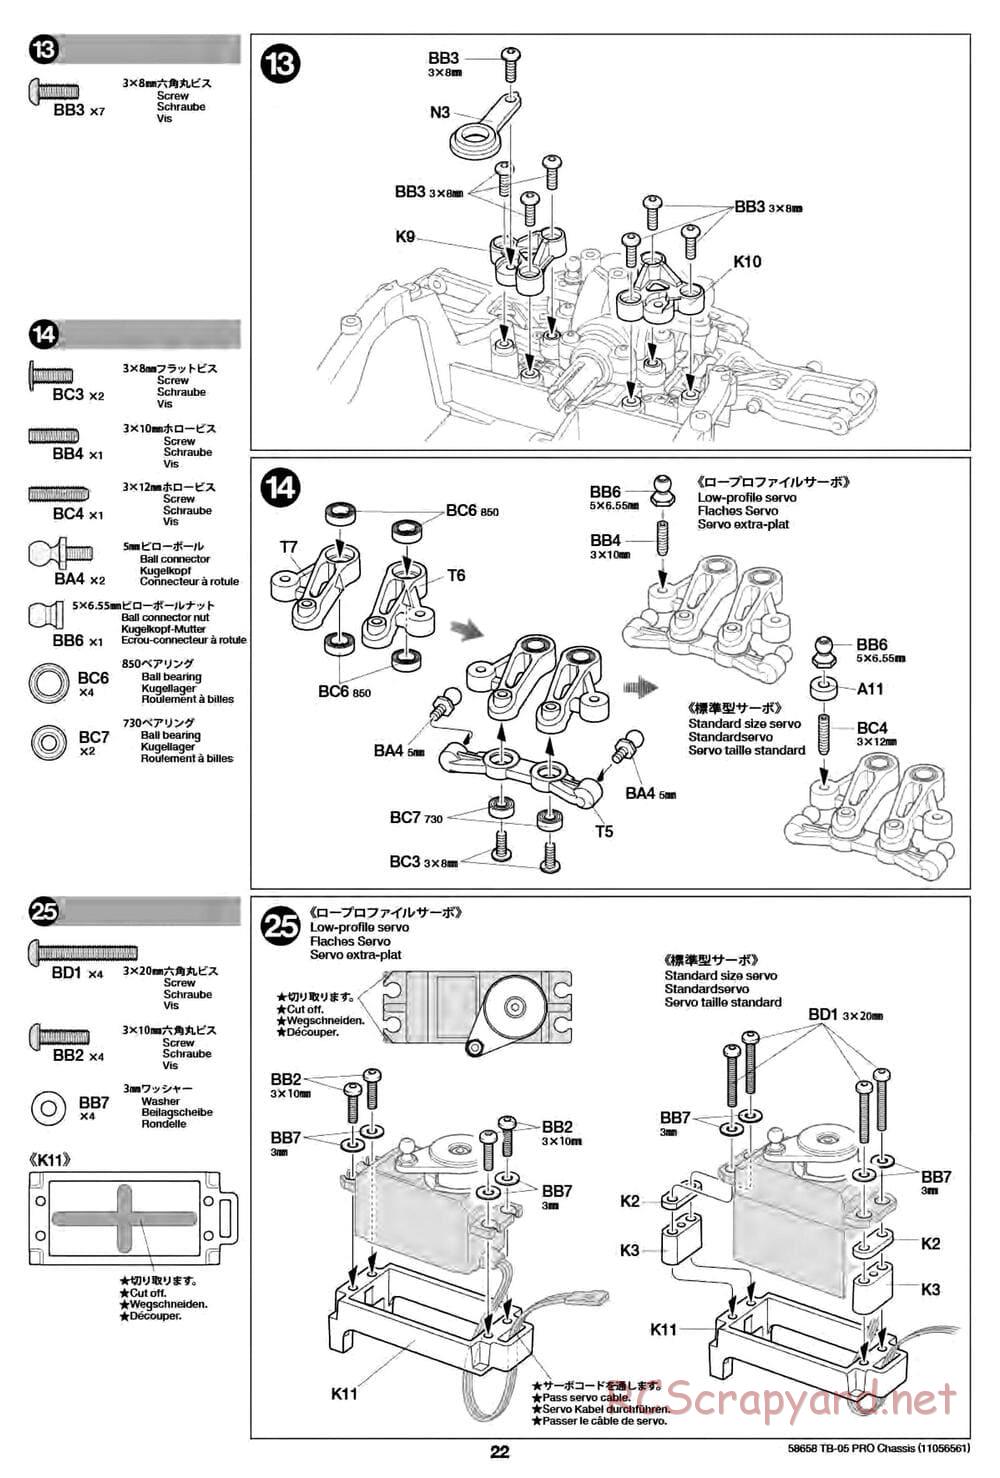 Tamiya - TB-05 Pro Chassis - Manual - Page 22